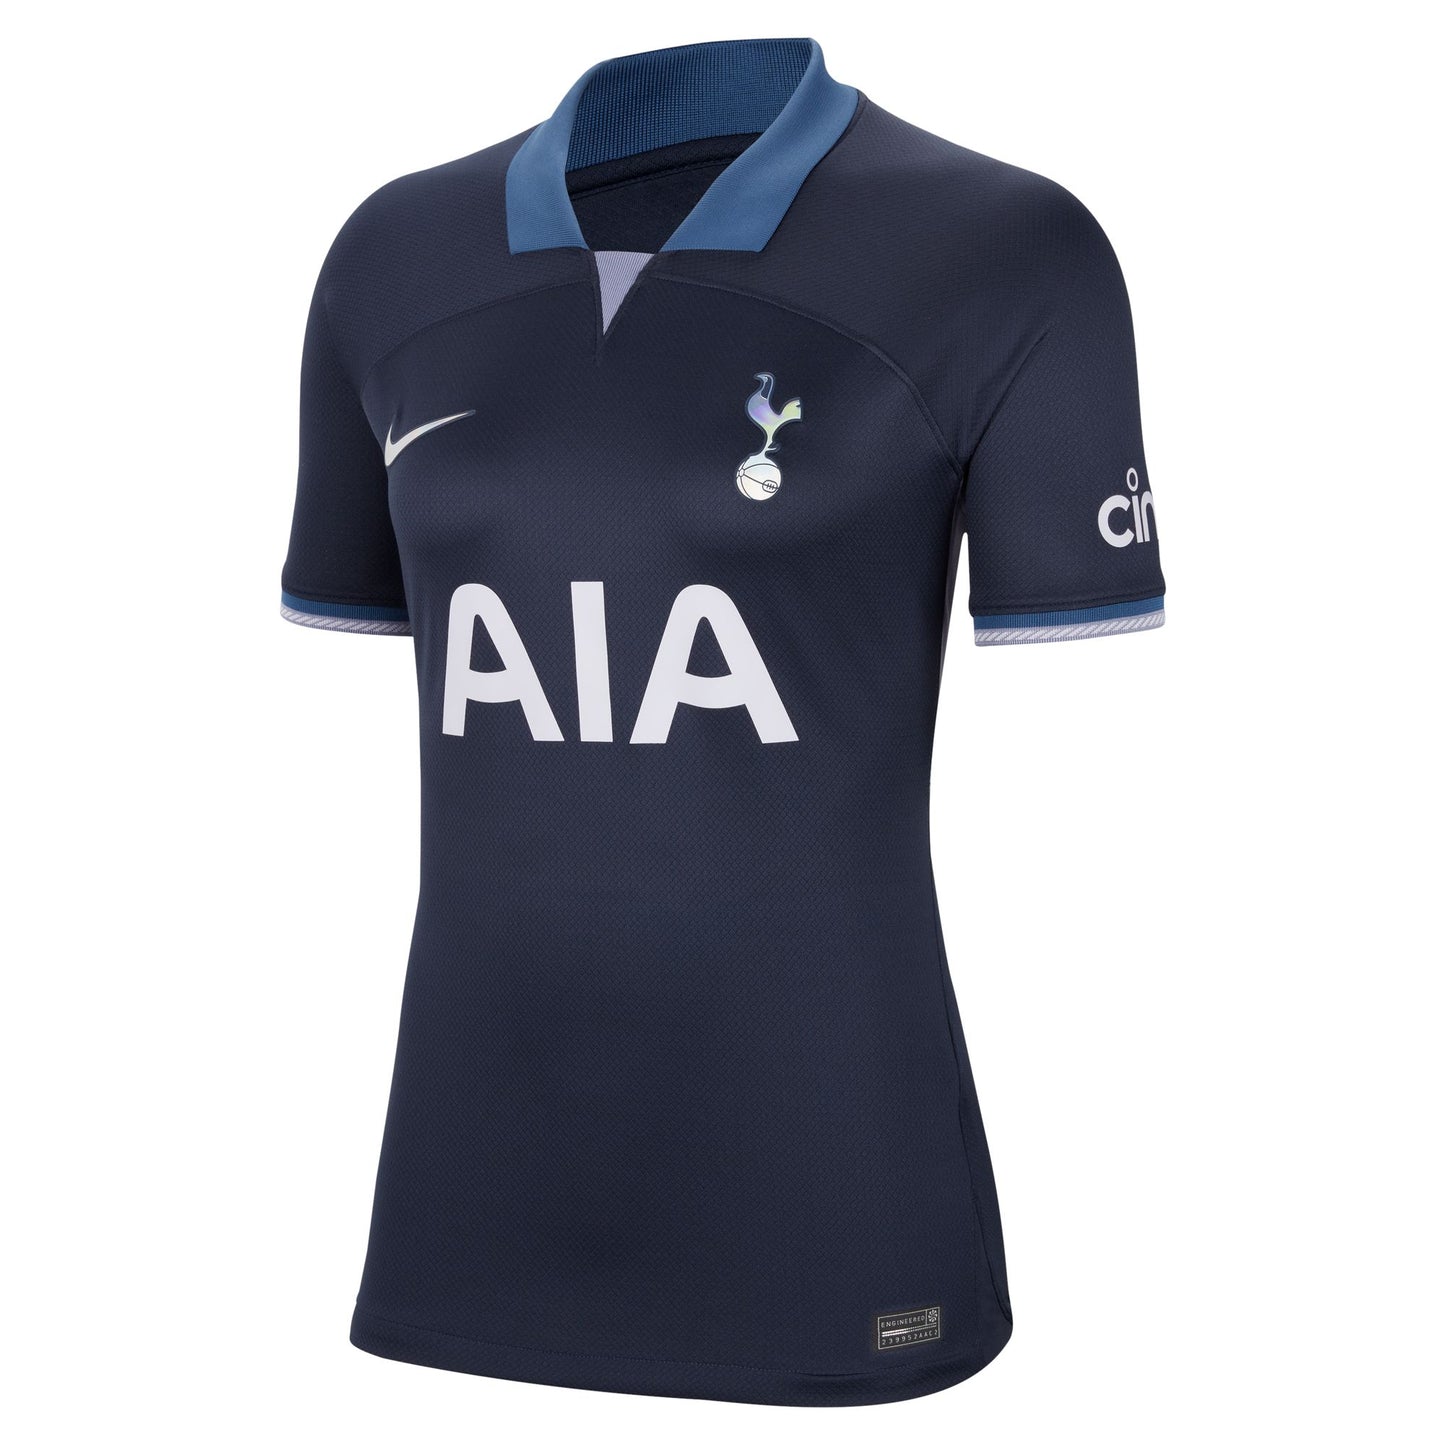 Camiseta Nike Stadium de corte curvo 23/34 visitante del Tottenham Hotspur